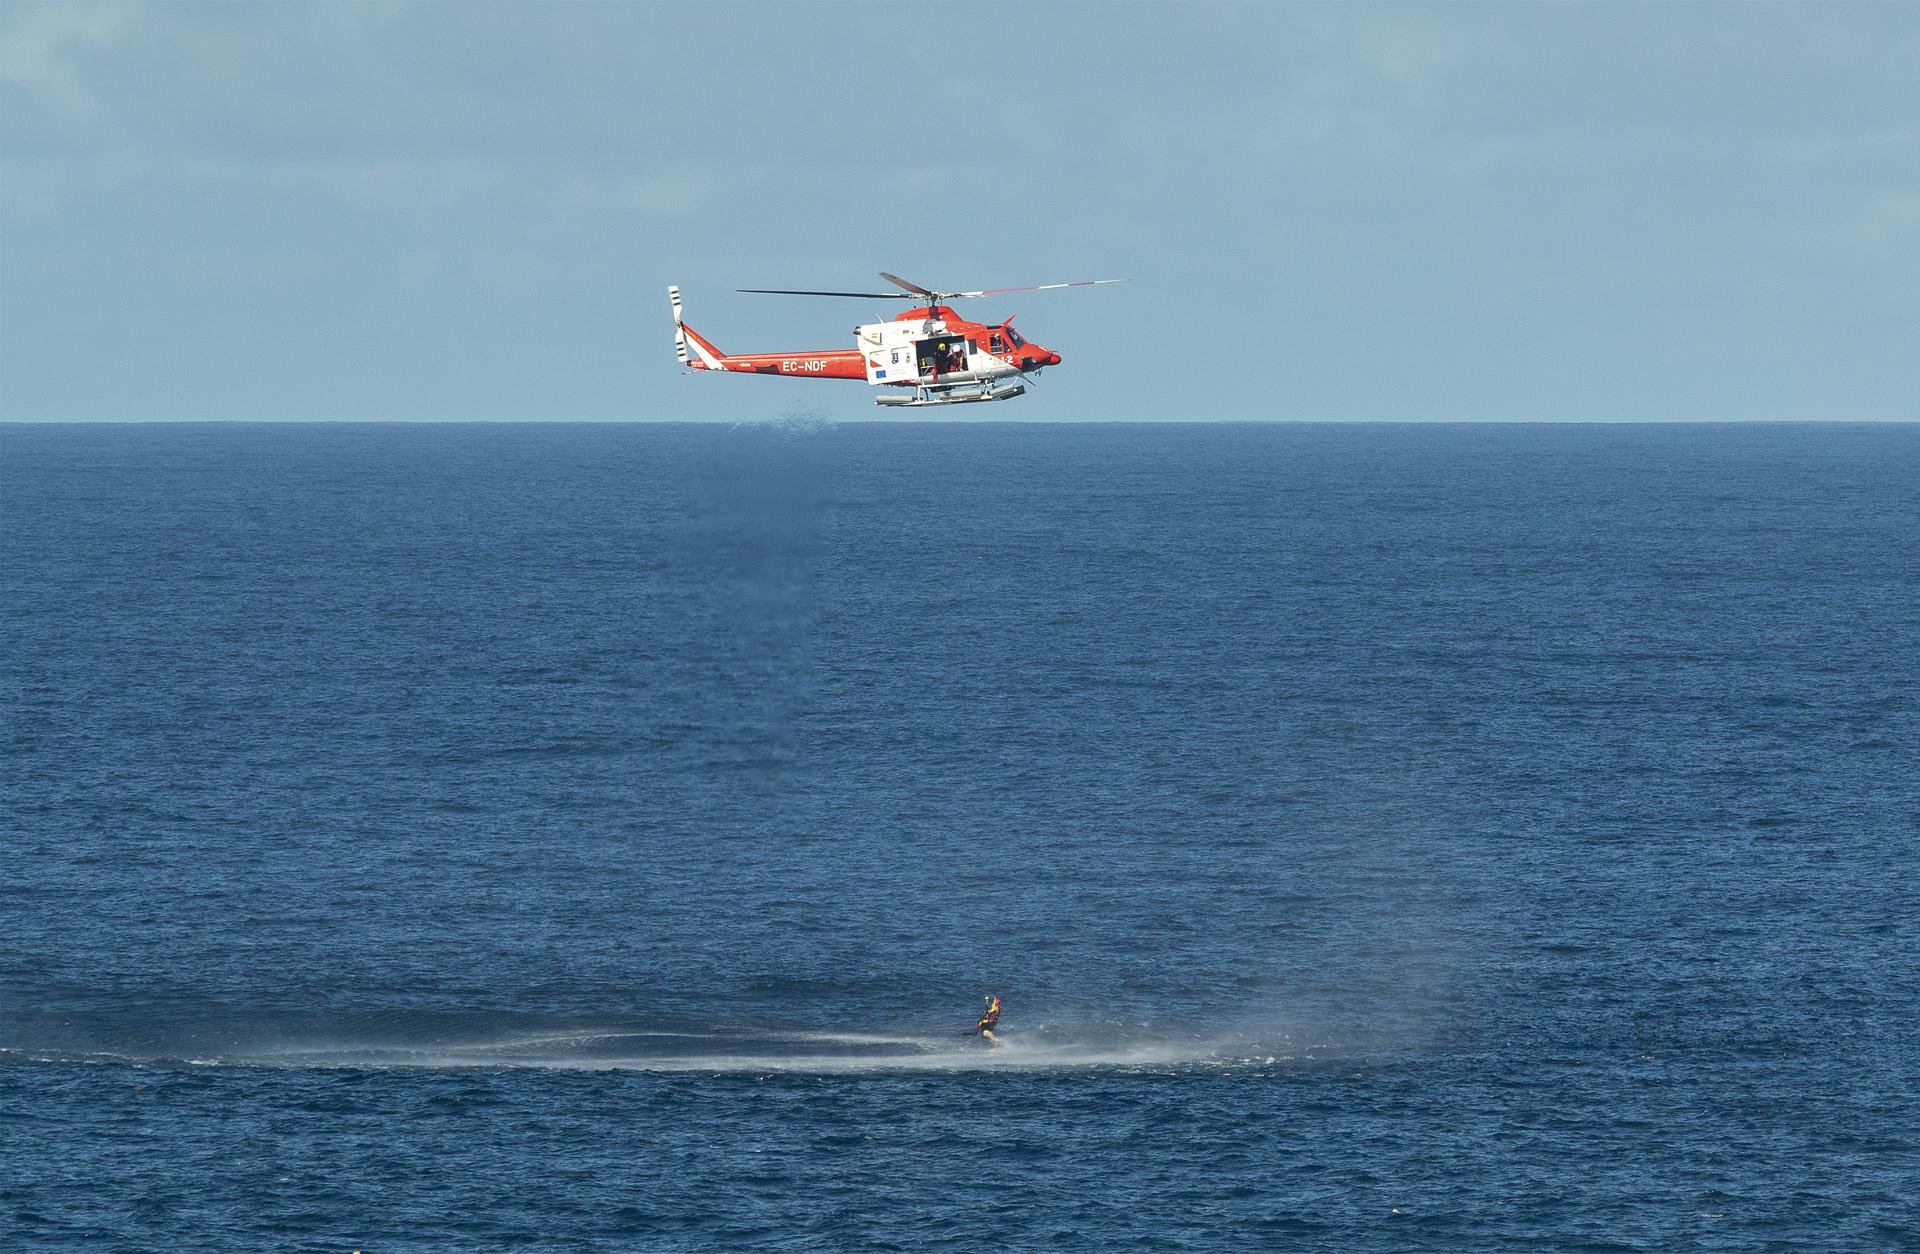 El helicóptero del Grupo de Emergencias y Salvamento (GES) del Gobierno de Canarias ha rescatado este miércoles el cadáver de un hombre en el mar, en la zona de Tenesar al norte de Lanzarote, donde naufragó anoche el velero Mai Tai. En el velero viajaban otros dos tripulantes rusos, que han sobrevivido al naufragio tras ser localizados esta madrugada, uno en el agua y otro en tierra. EFE/ Adriel Perdomo